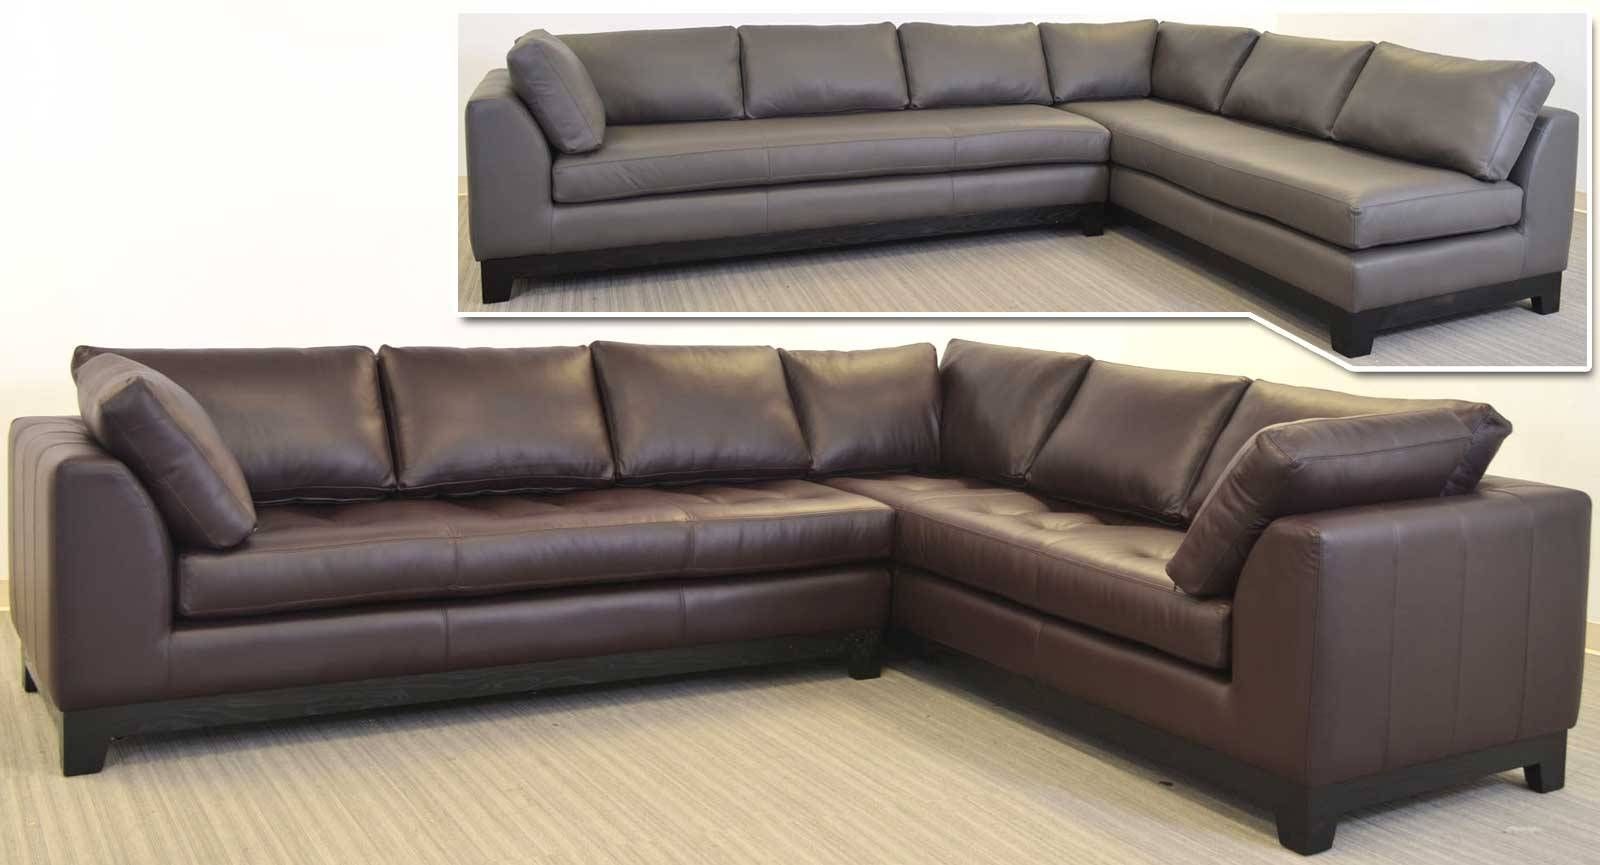 single cushion leather sofa tight back